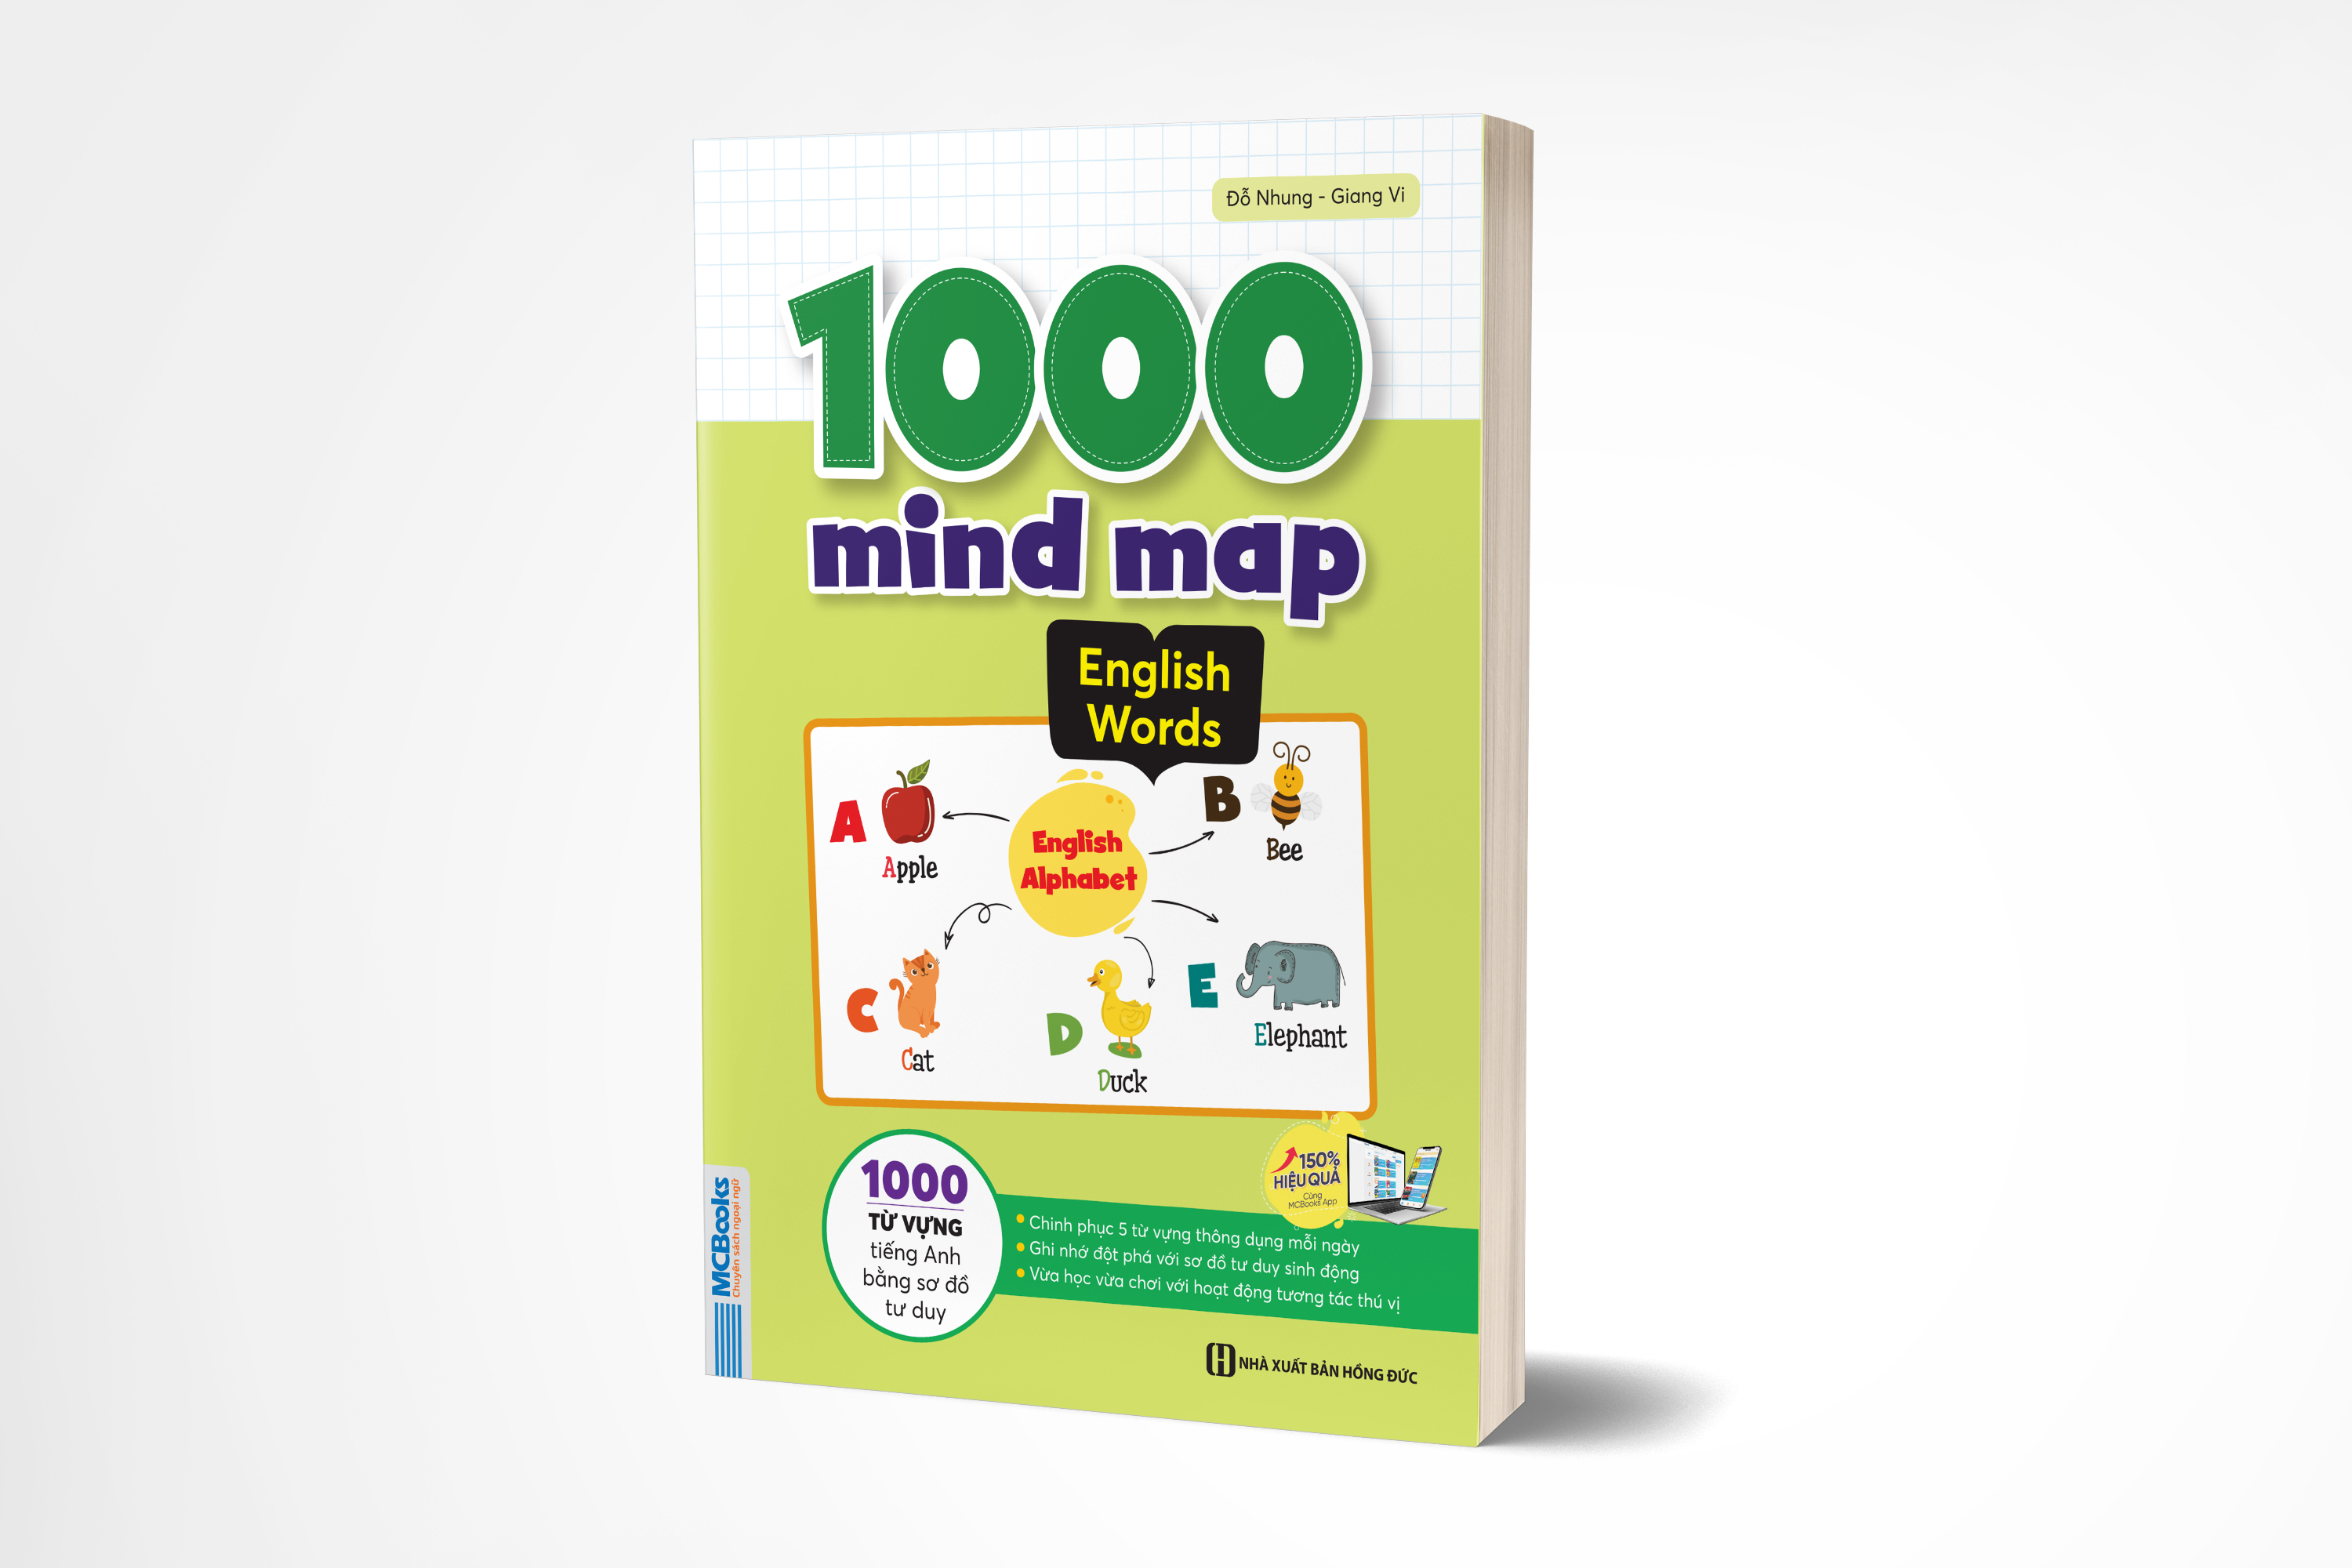 1000 mind map  English - 1000 từ vựng tiếng Anh bằng sơ đồ tư duy